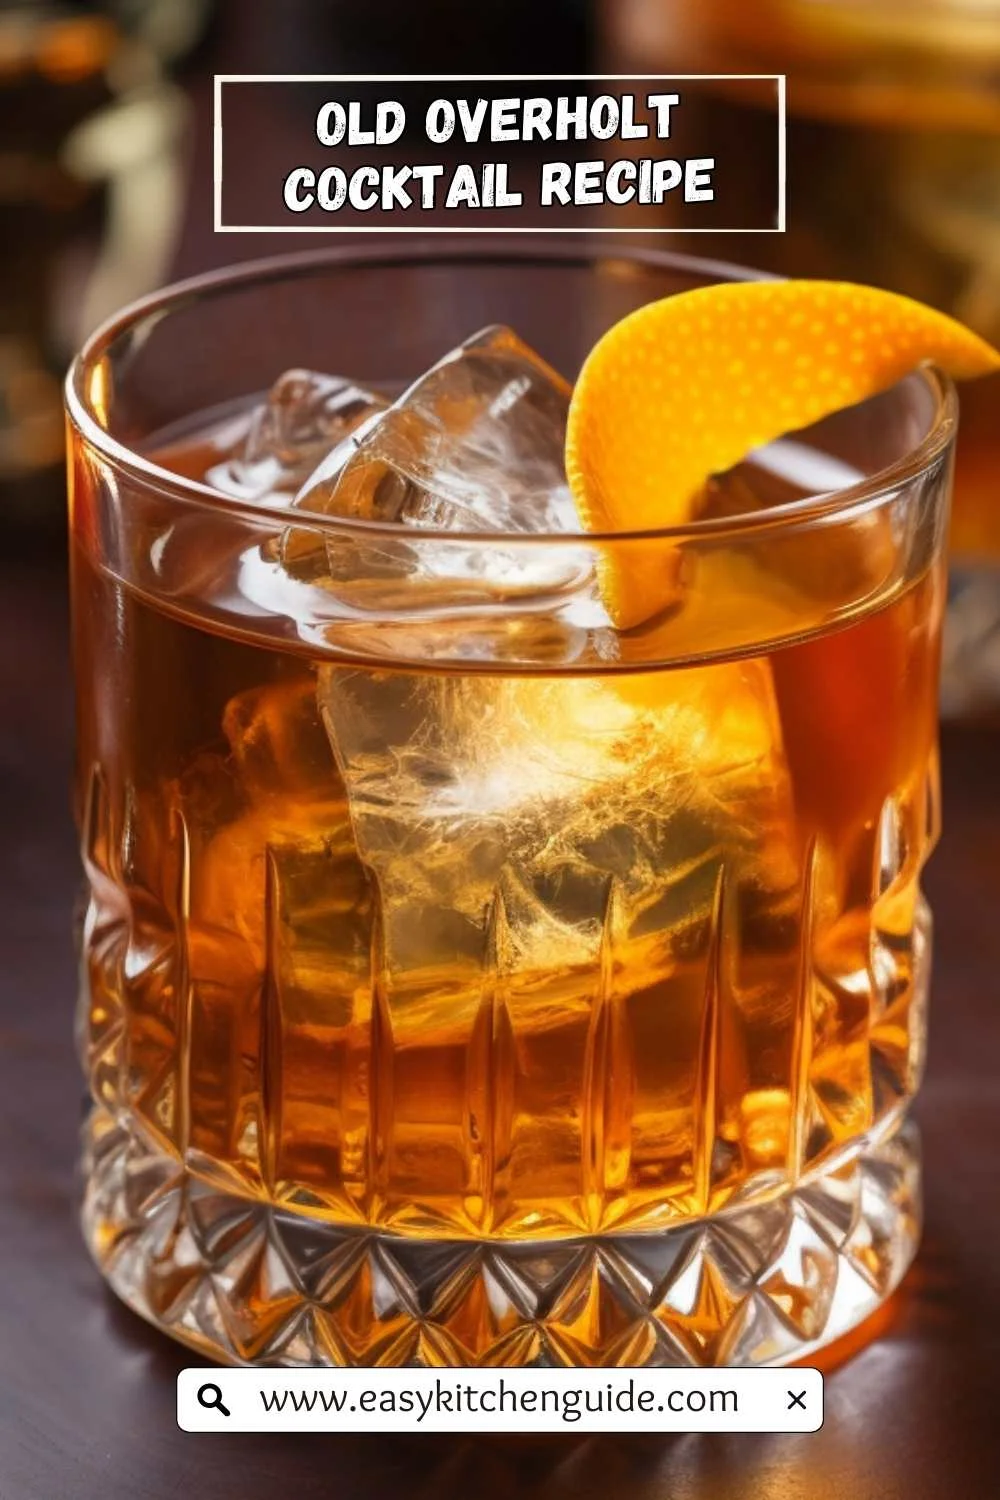 Old Overholt Cocktail Recipe